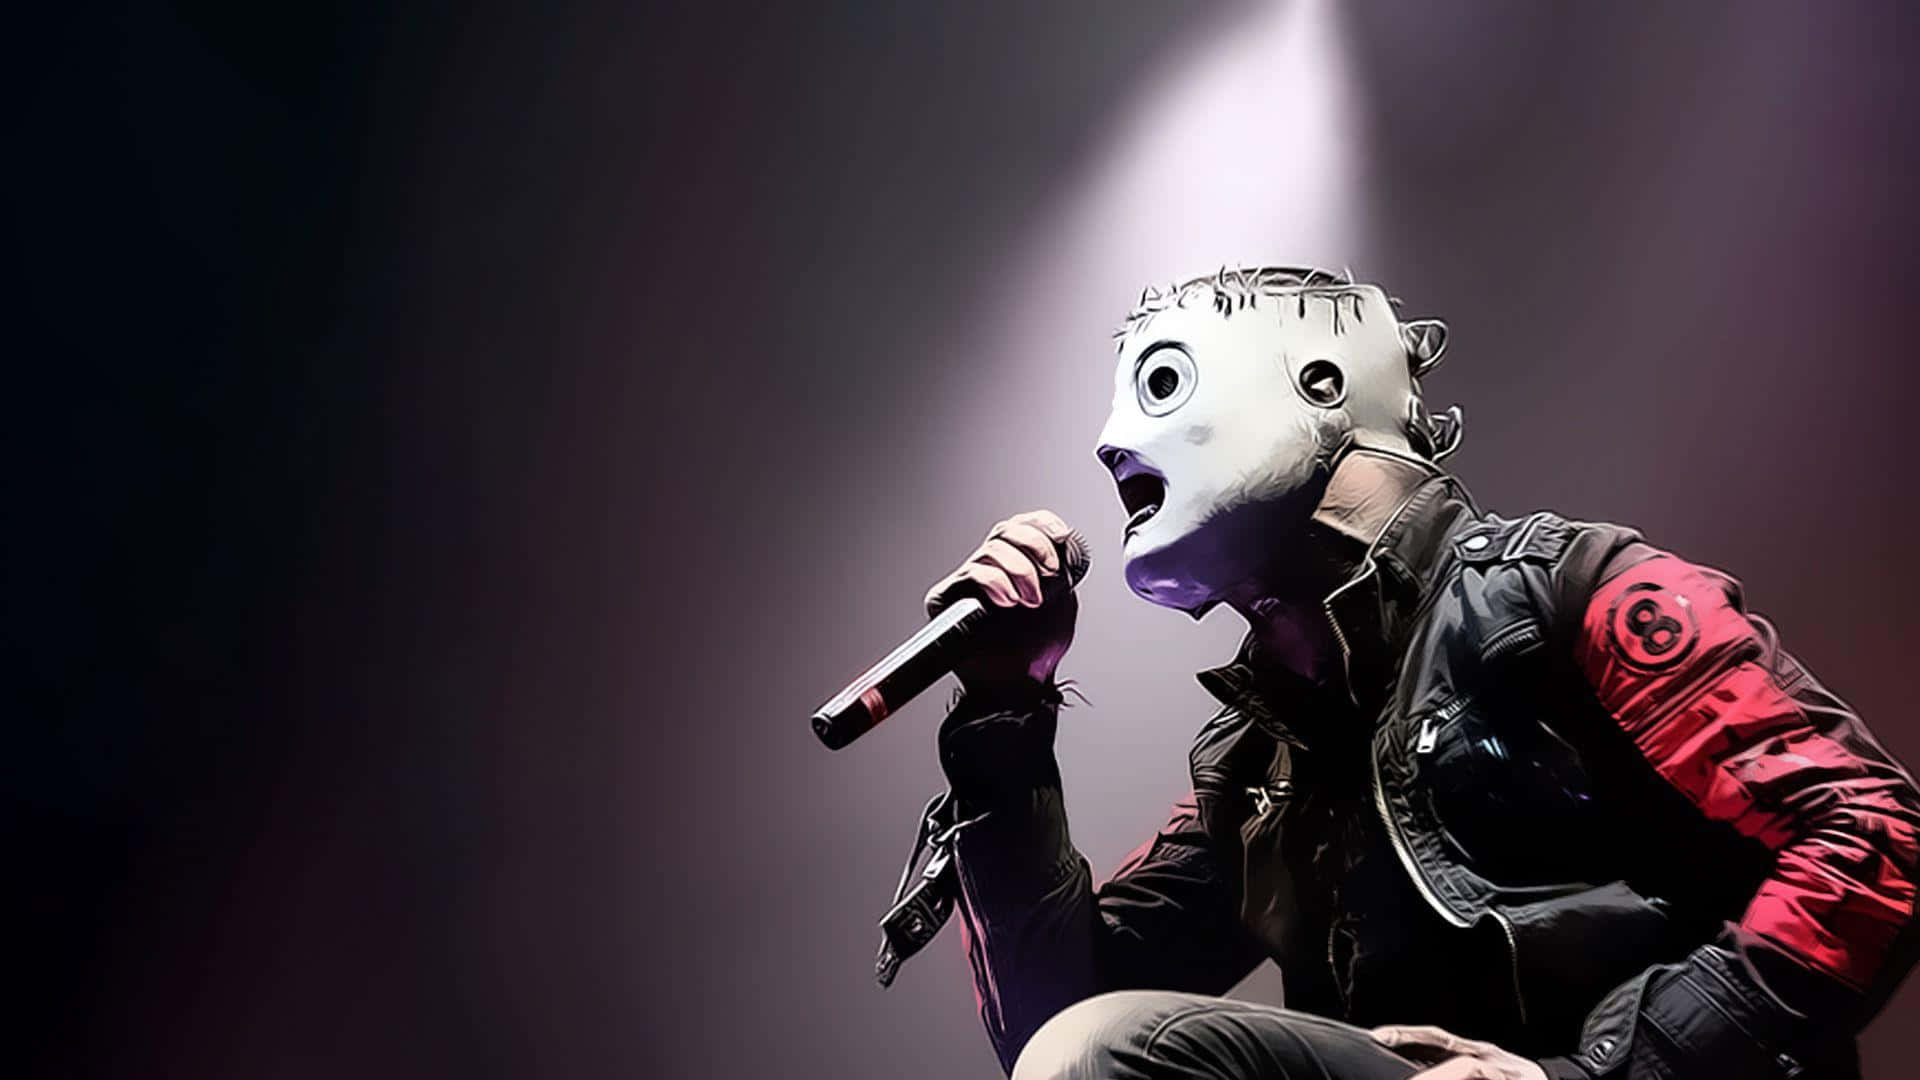 Slipknot Desktop Band Singer With Mask Wallpaper